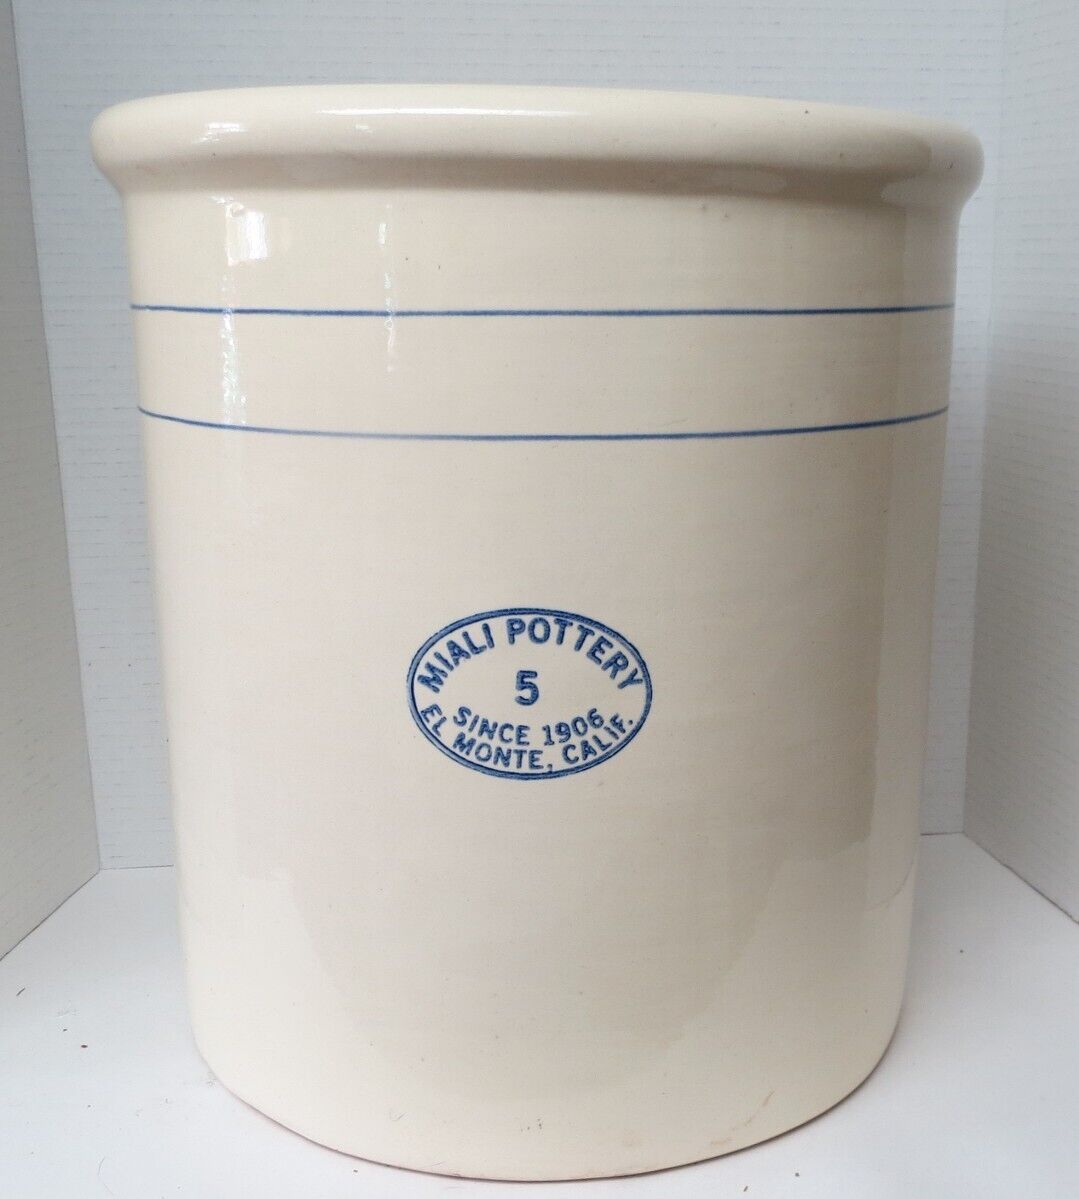 Rare Vintage 5 Gallon Miali Pottery El Monte, CA. Stoneware Crock